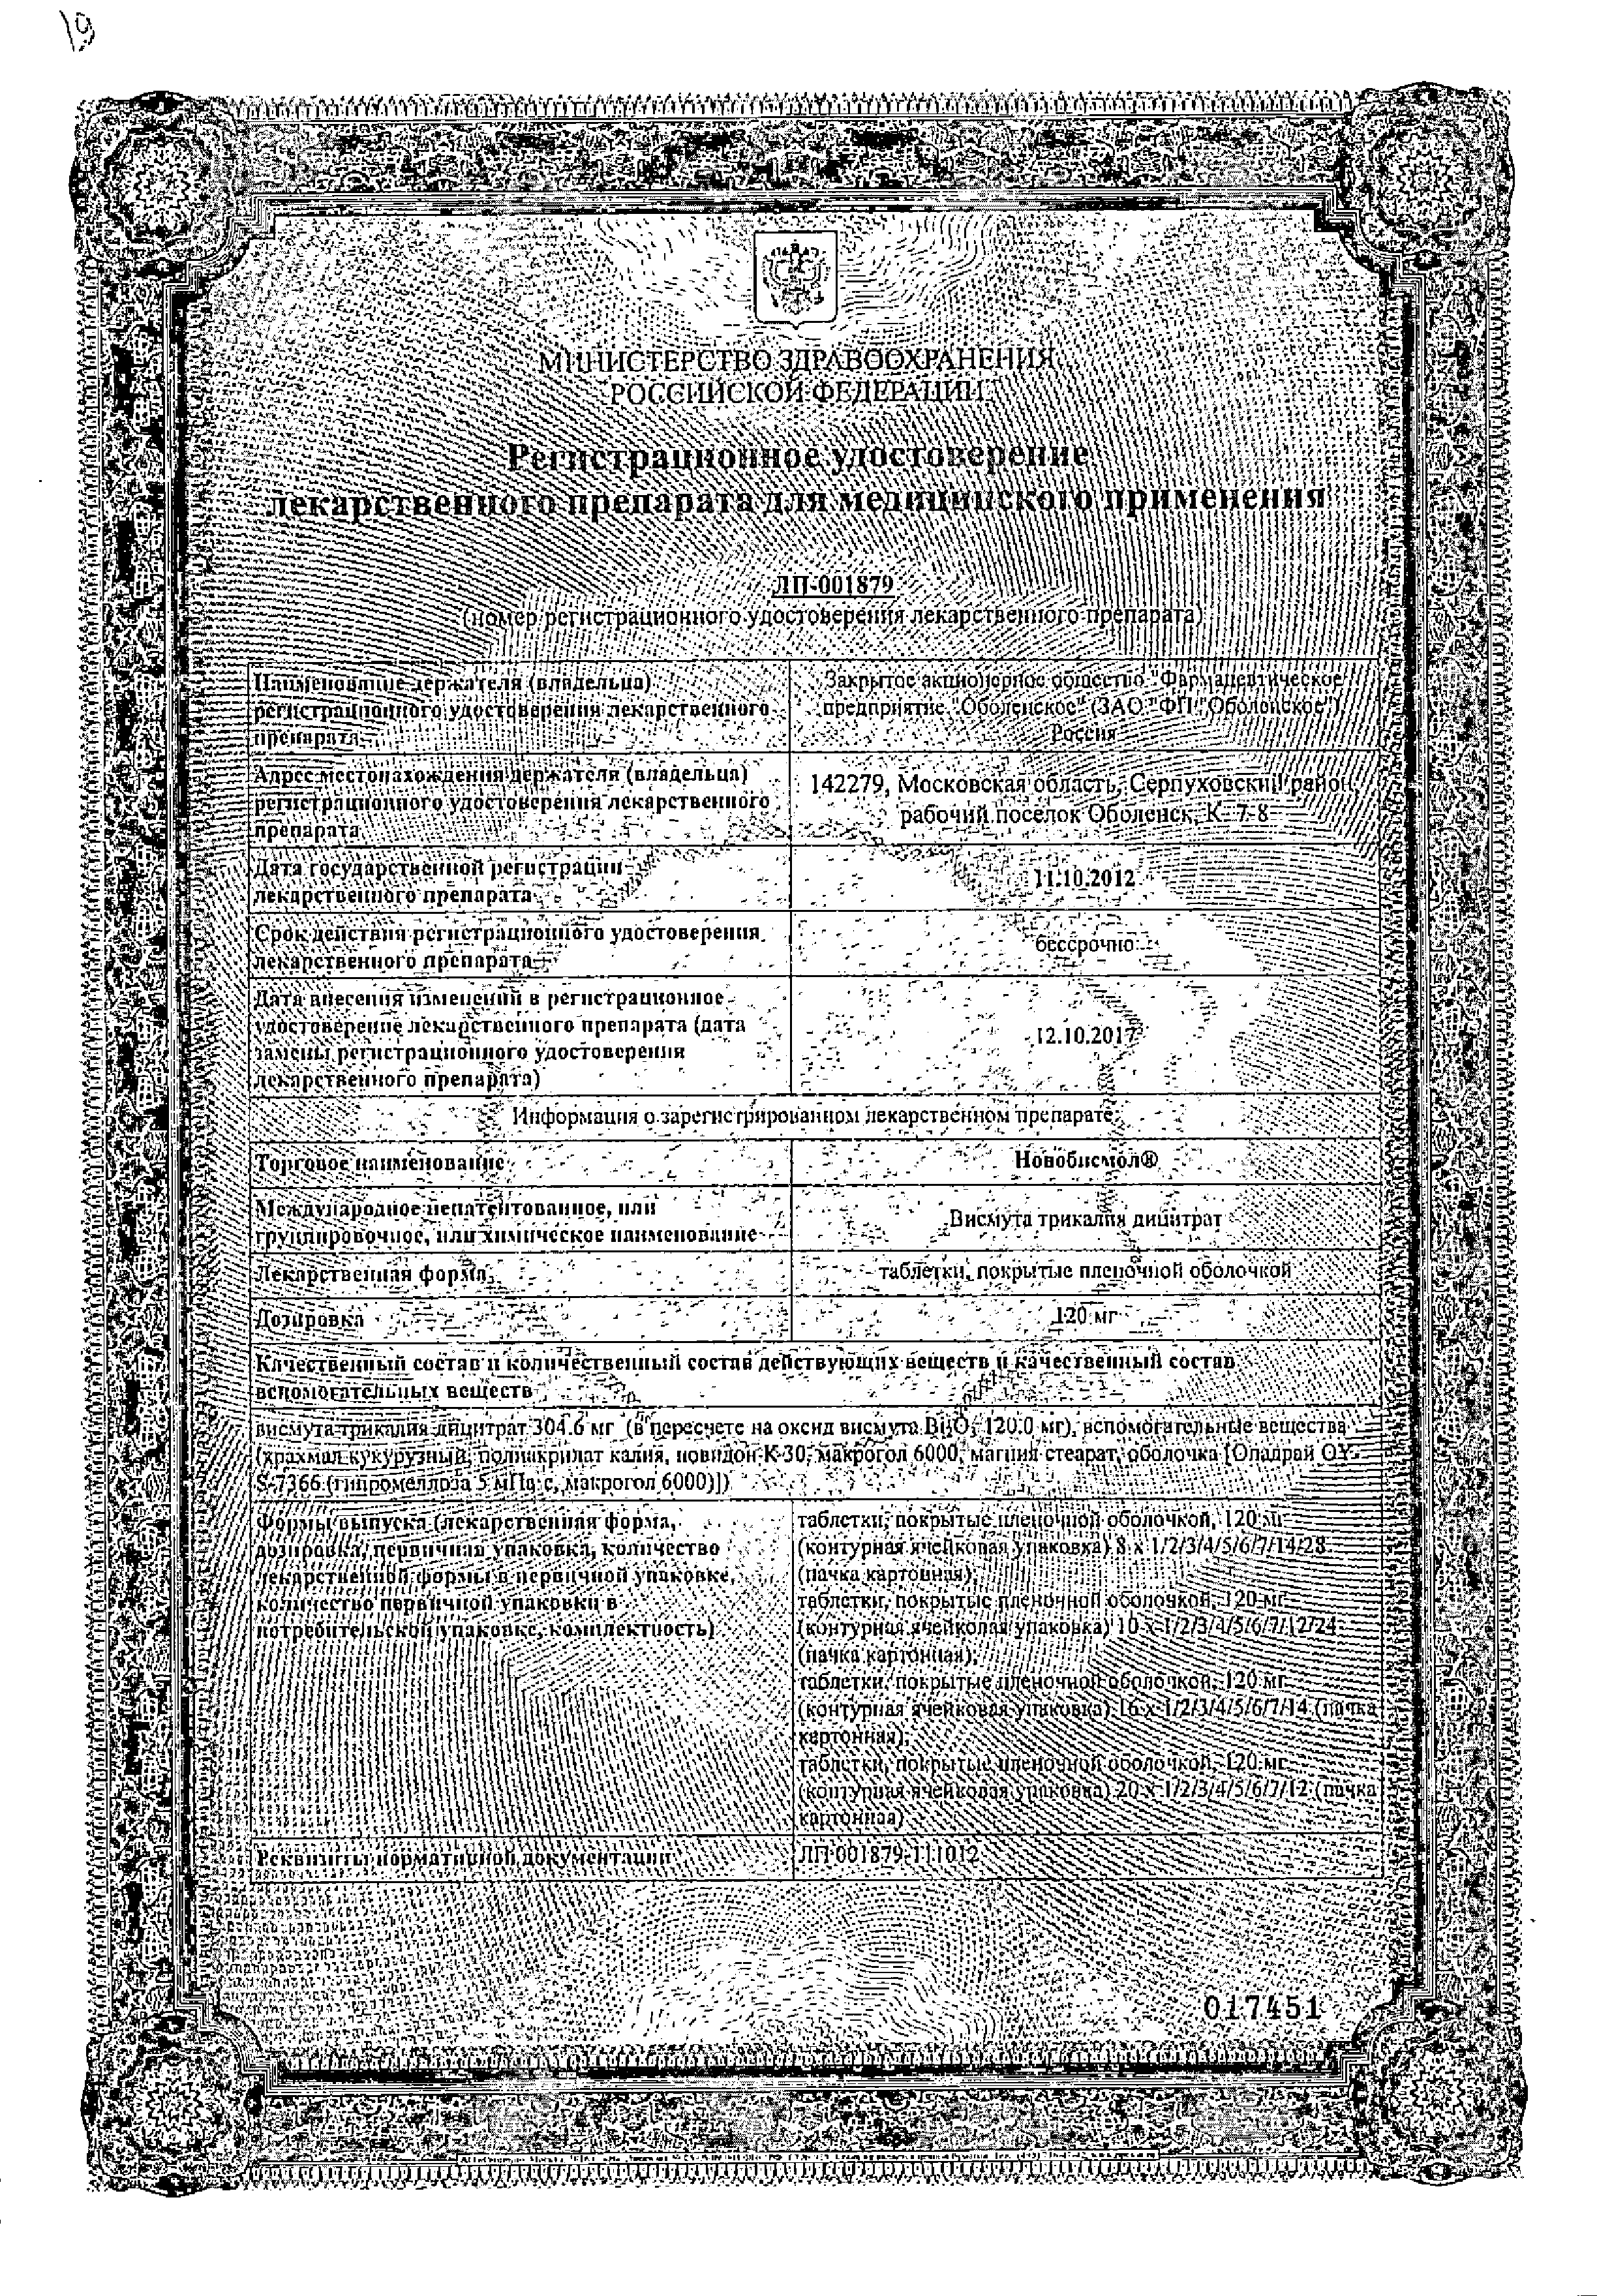 Новобисмол сертификат